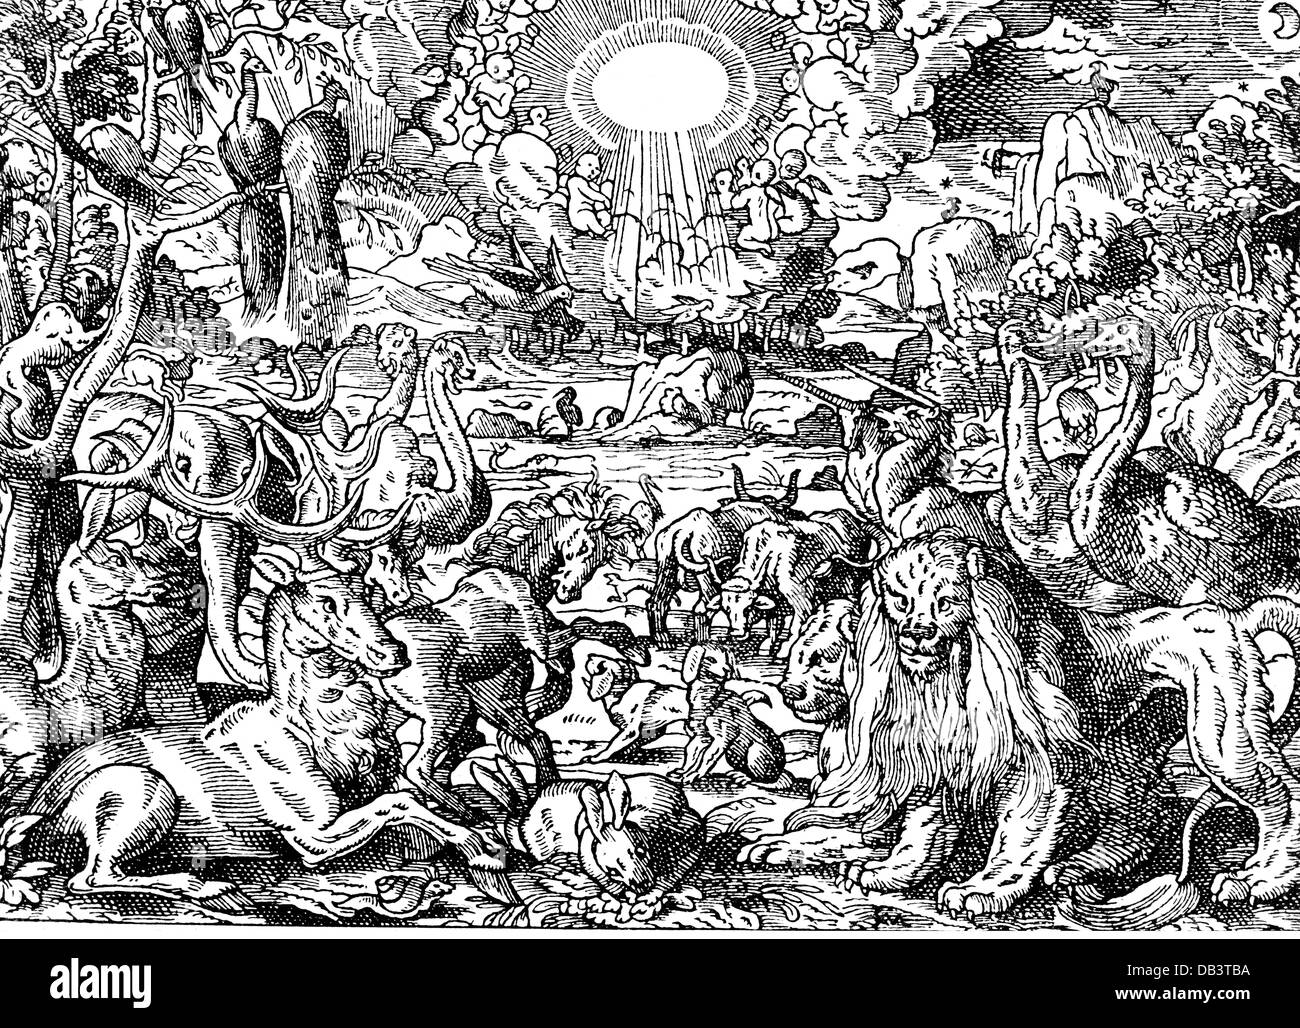 La religione, scene bibliche, paradise, incisione su rame di Matthew Merian, di Francoforte sul Meno, Germania, 1633, artista del diritto d'autore non deve essere cancellata Foto Stock